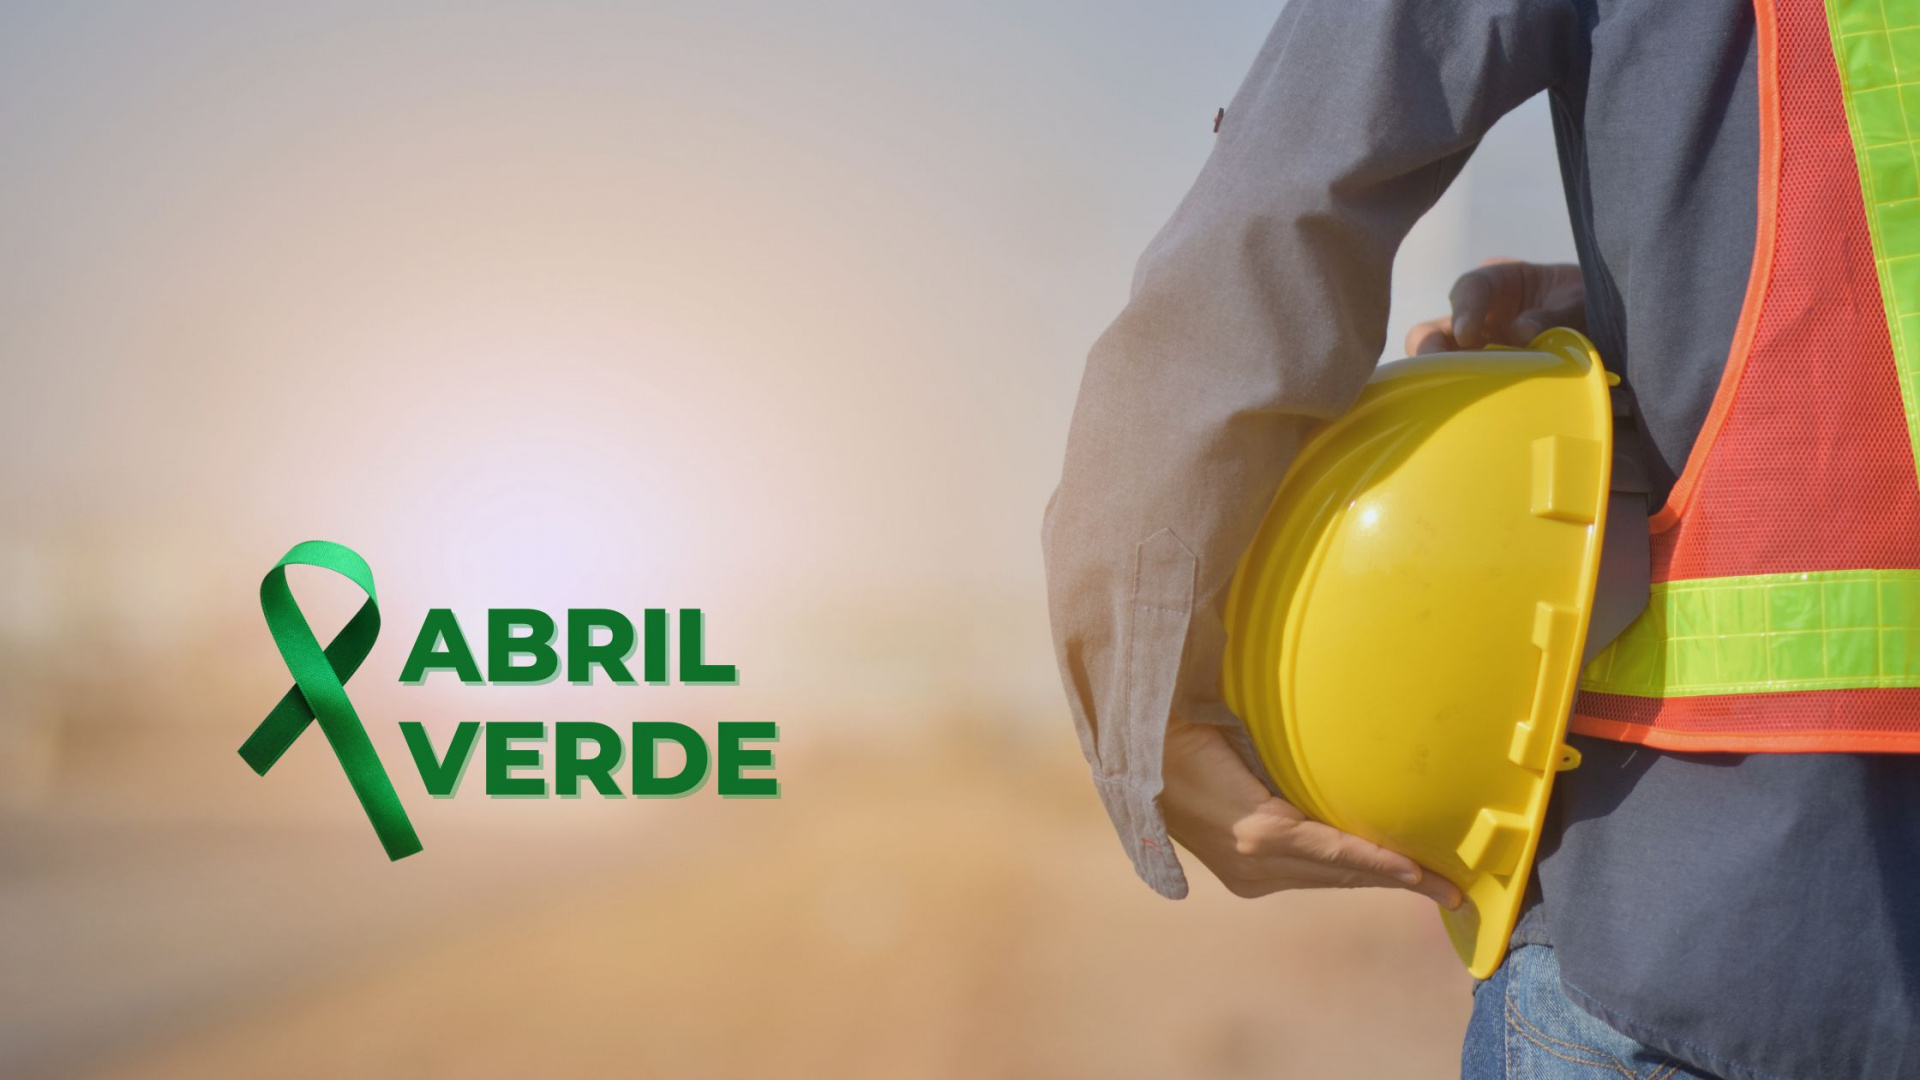 Movimento “Abril Verde” celebra 10 anos e incentiva várias ações em prol da segurança e saúde no ambiente de trabalho em todo o Brasil - Revista Cipa